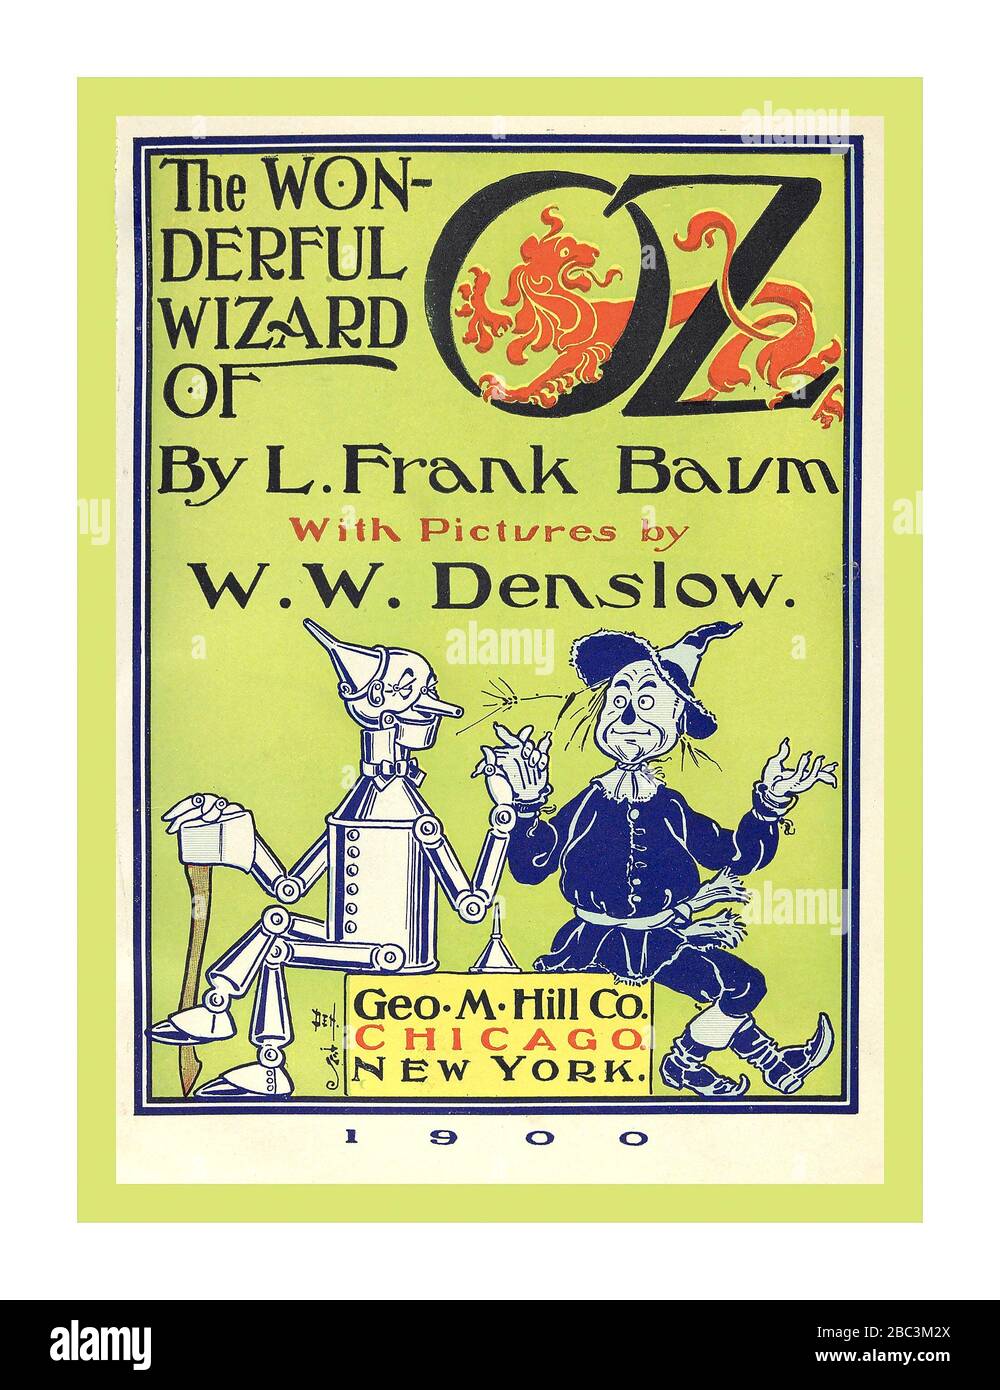 ZAUBERER VON OZ auf dem Cover des ursprünglichen 1900 historischen Buches "der wunderbare Zauberer von Oz" des Autors L. Frank Baum, (Lyman Frank), 1856-1919. Illustration des Künstlerdesigners W. W.Denslow, (William Wallace), 1856-1915, veröffentlicht Chicago; New York: G.M. Hill Co. C1900 Stockfoto